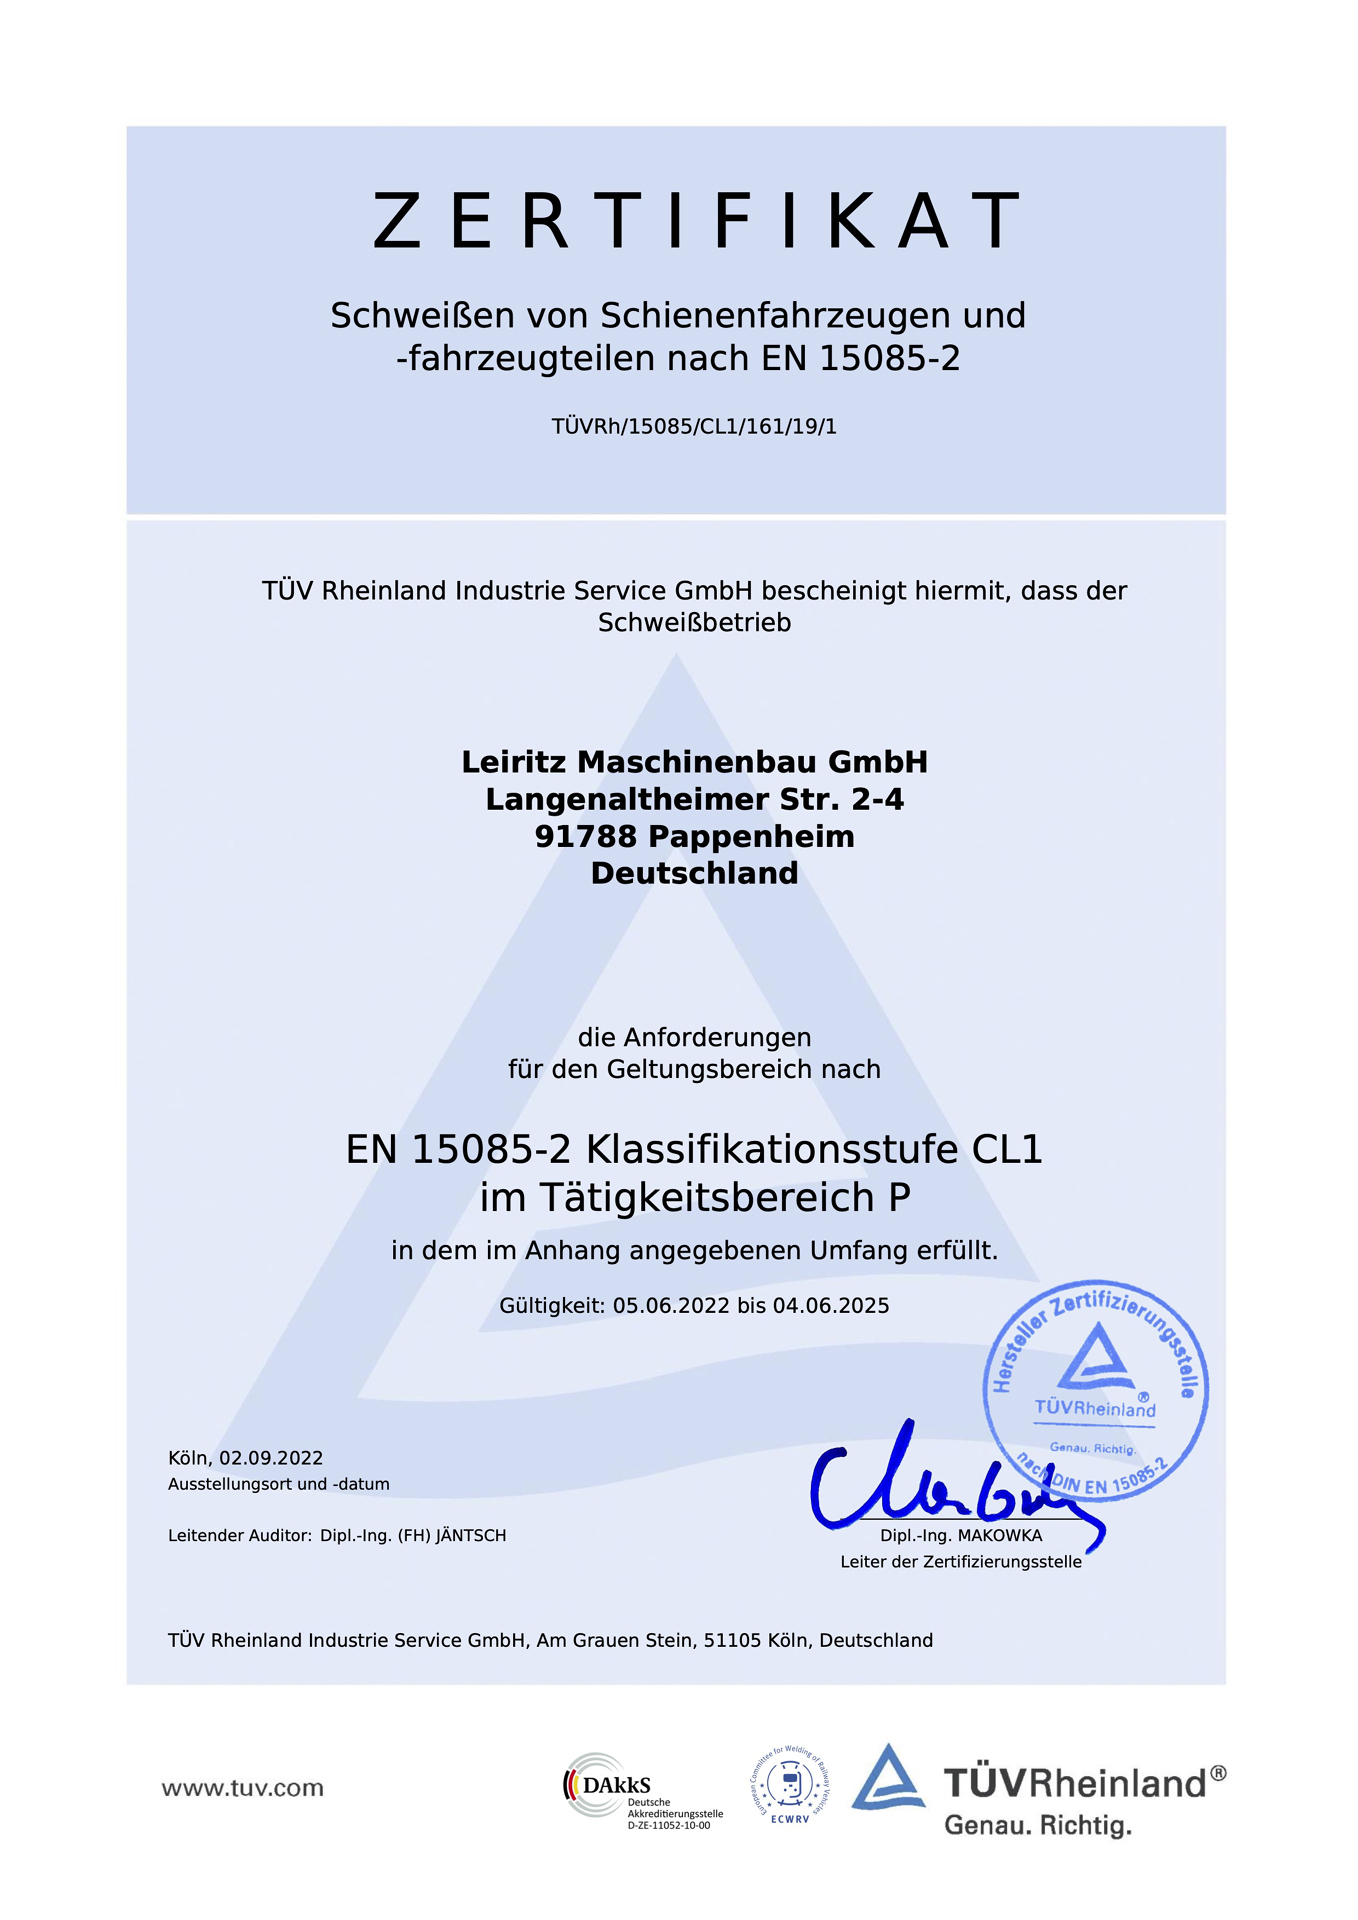 Leiritz ist Schweißfachbetrieb und nach EN 15085-2 zertifiziert.